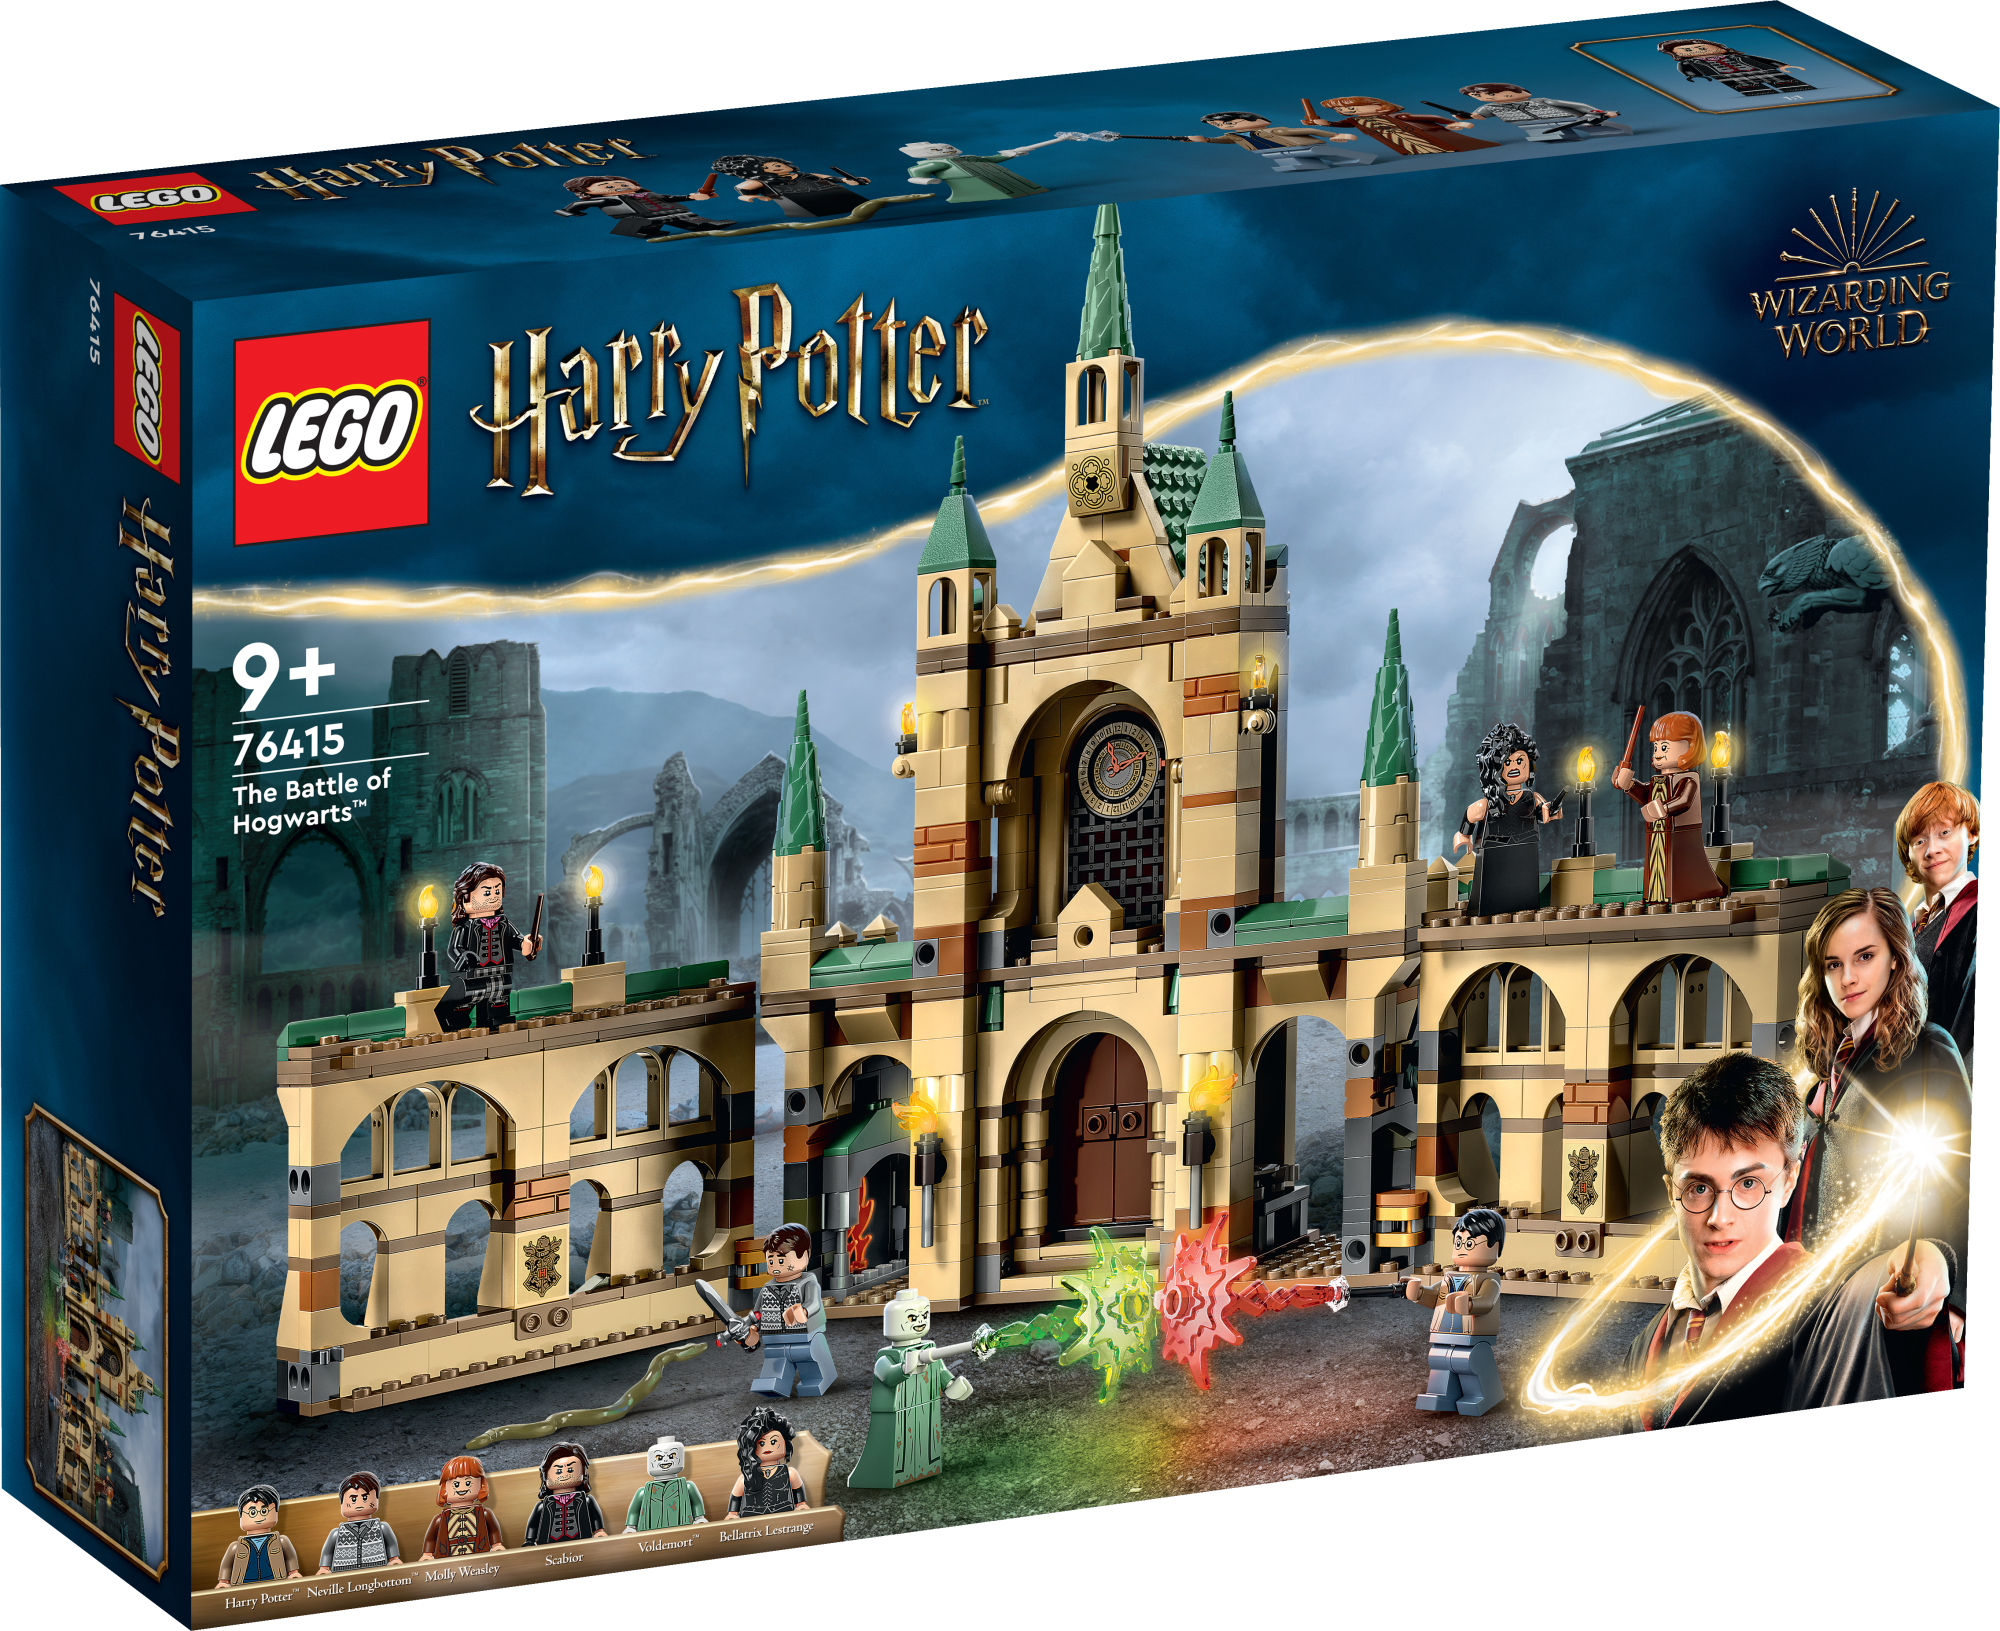 Harry Potter La battaglia di Hogwarts Castello Giocattolo con Minifigure di Molly Weasley Bellatrix Lestrange Voldemort e la Spada di Grifondoro Set I Doni della Morte - Parte 2 76415